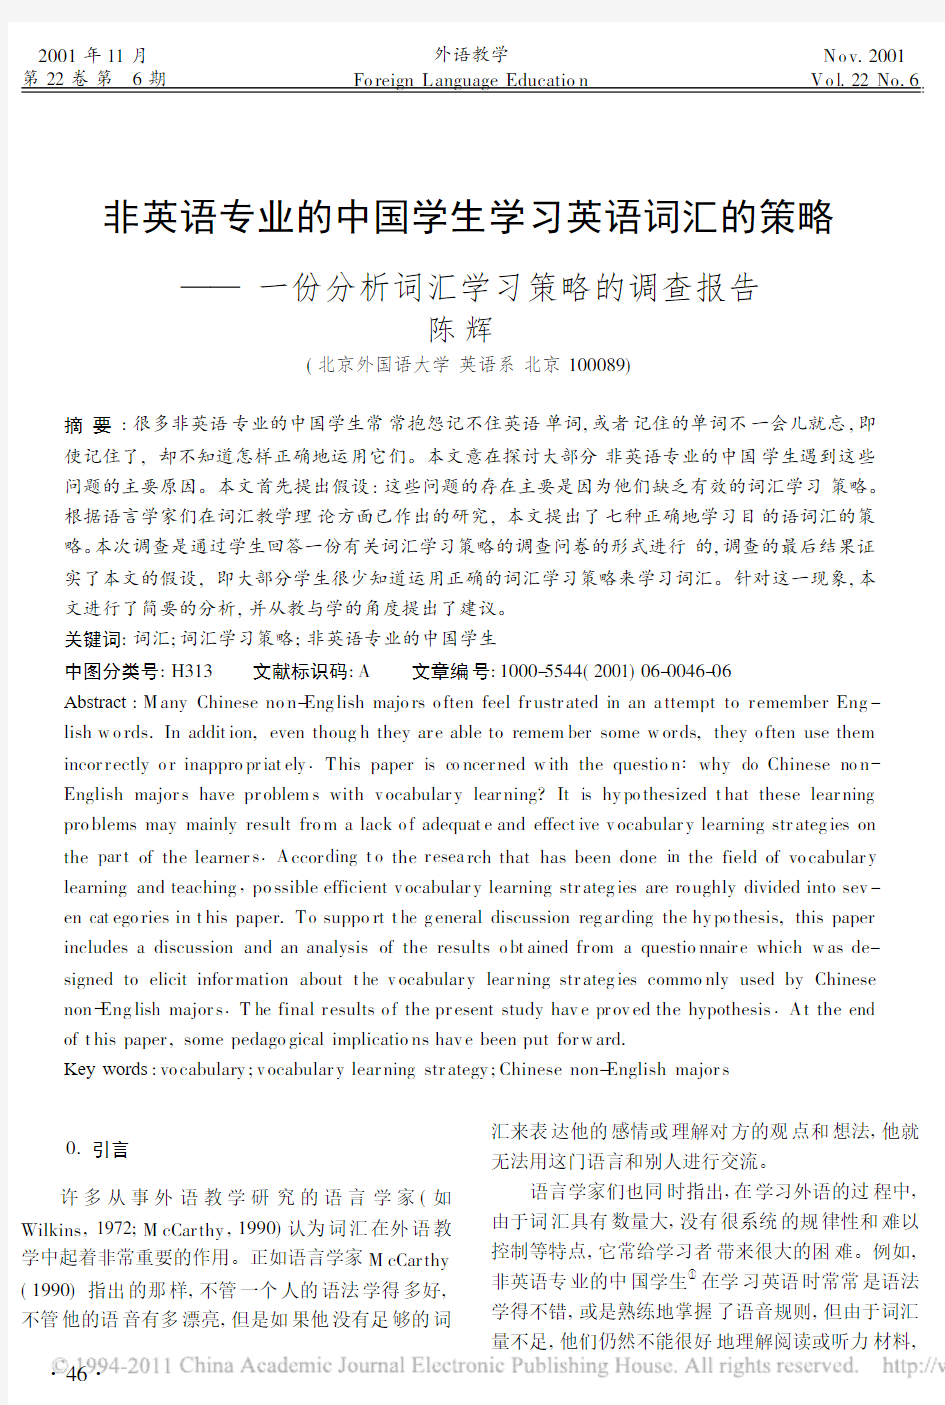 非英语专业的中国学生学习英语词汇的策略_一份分析词汇学习策略的调查报告